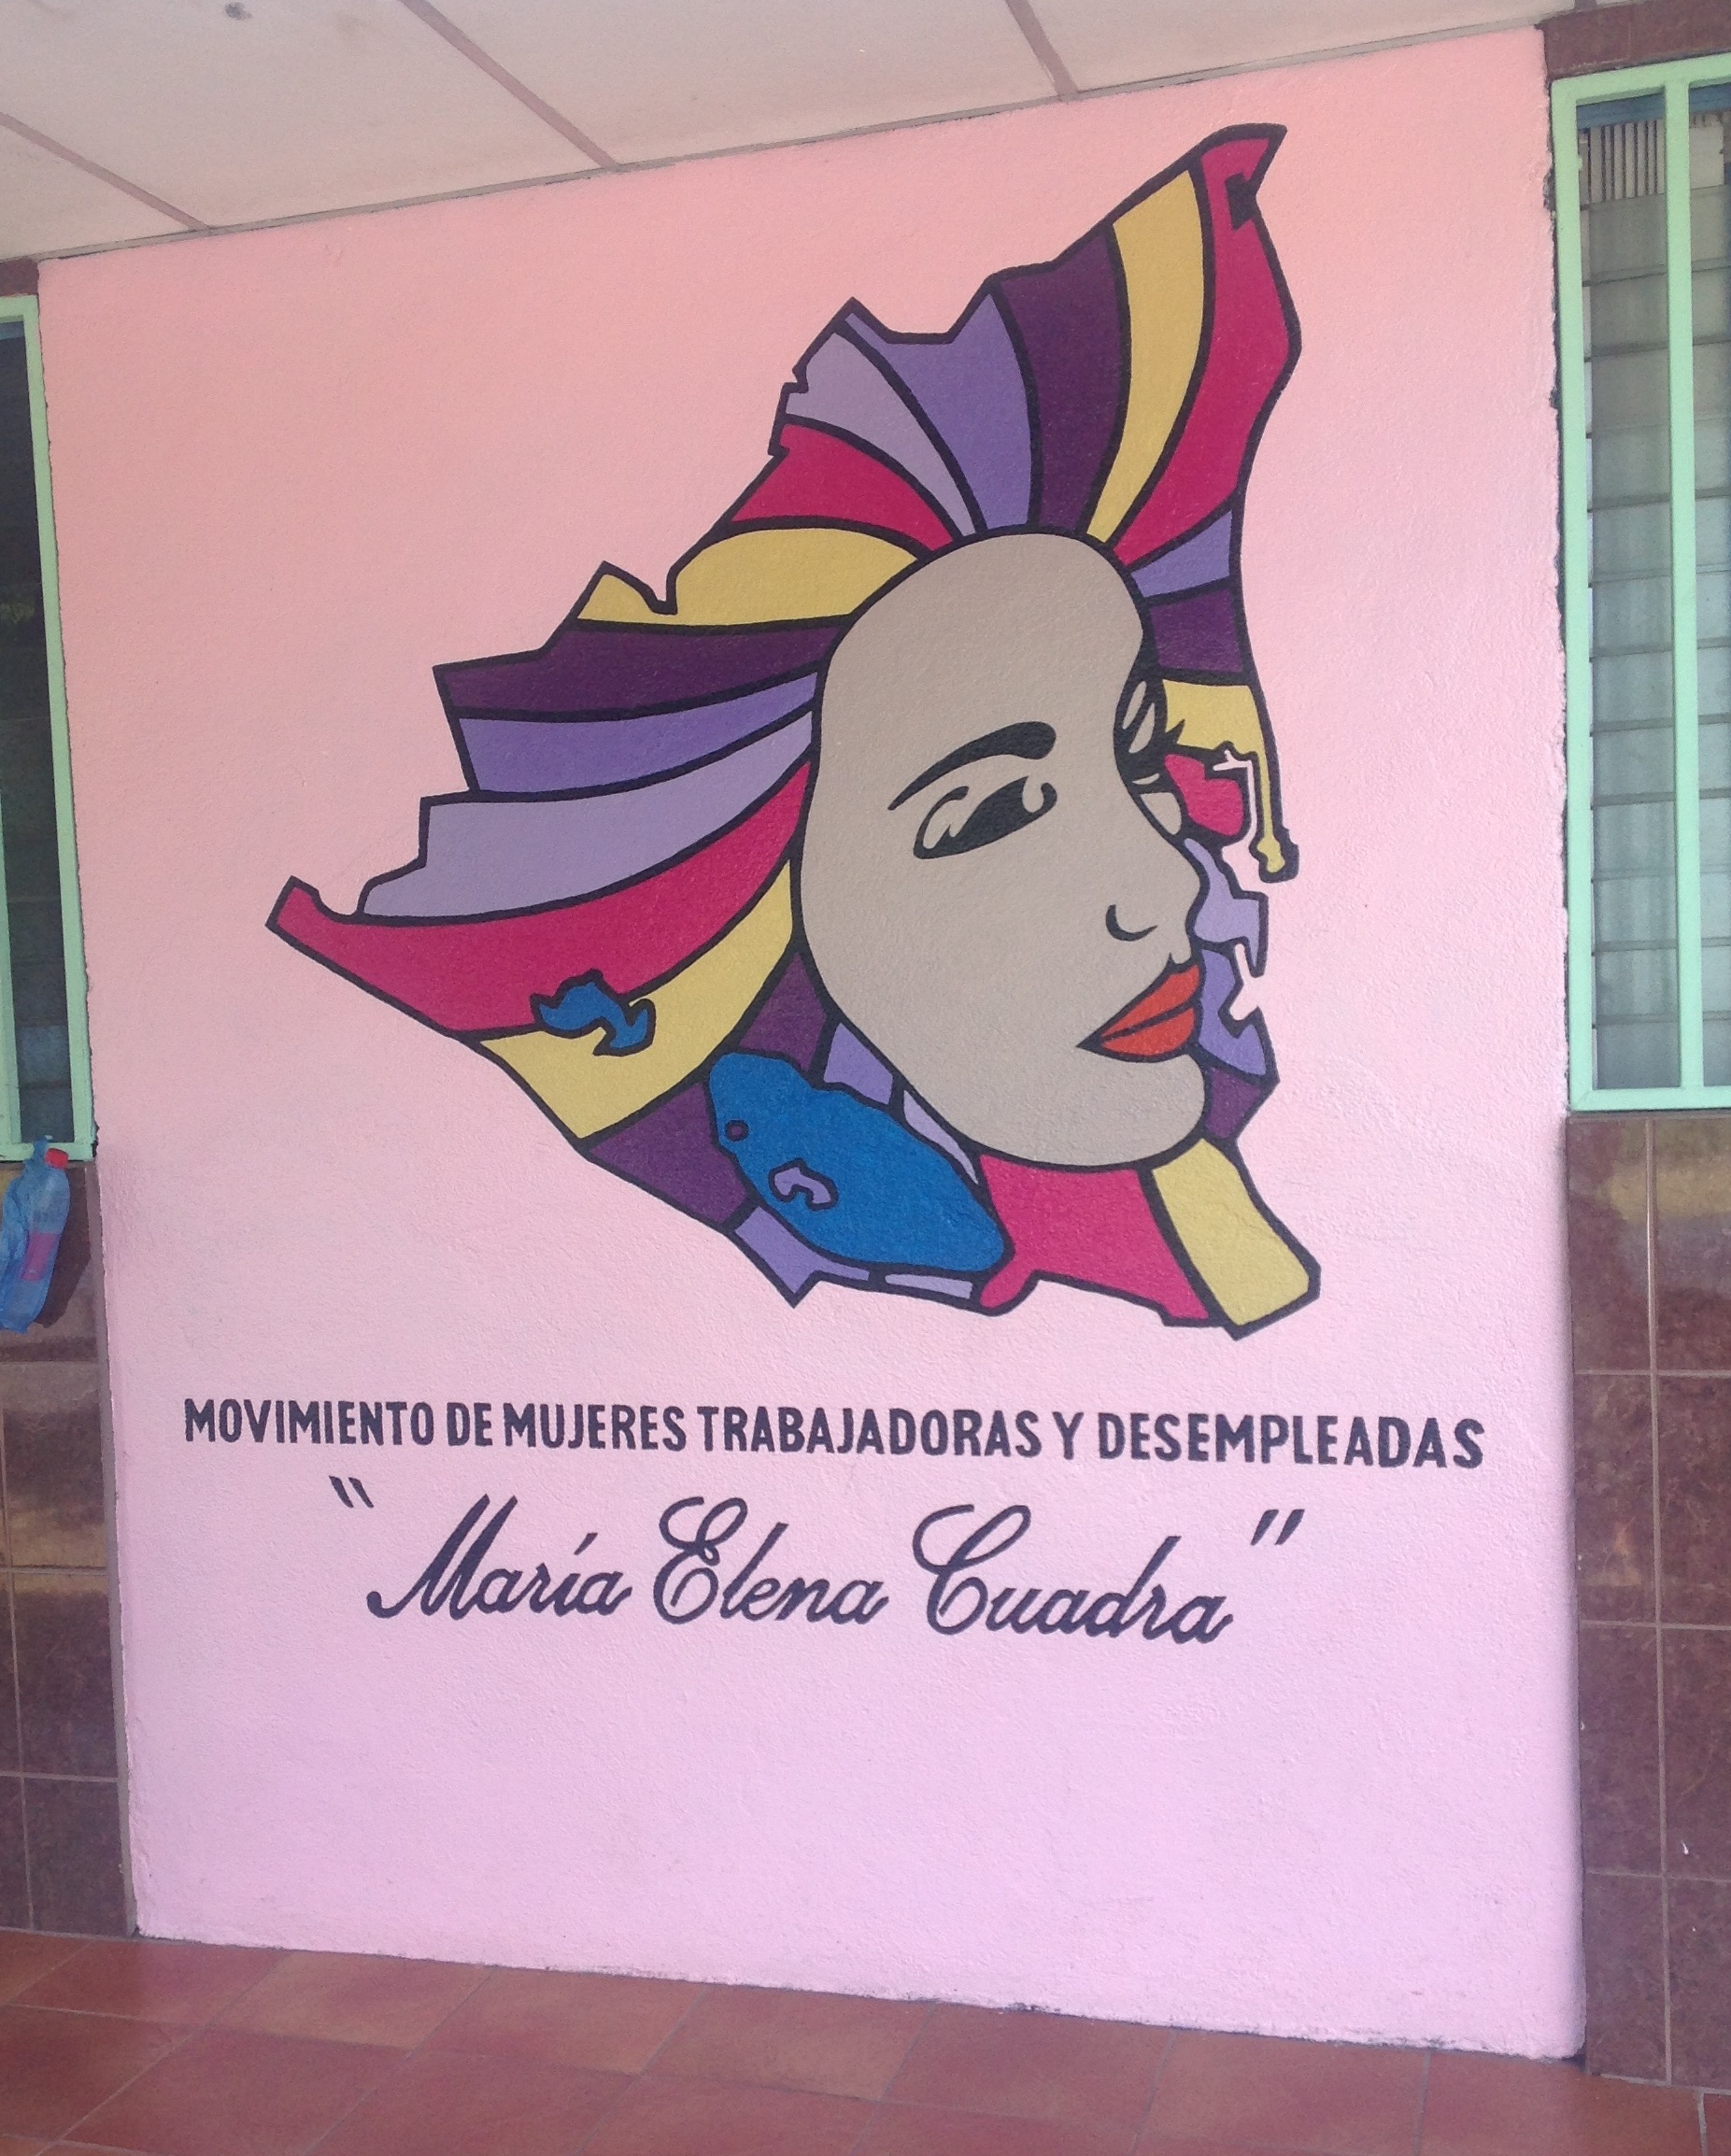 Movimiento de Mujeres Trabajadoras y Desempleadas Maria Elena Cuadra, una bonita imagen que representa el mapa del país